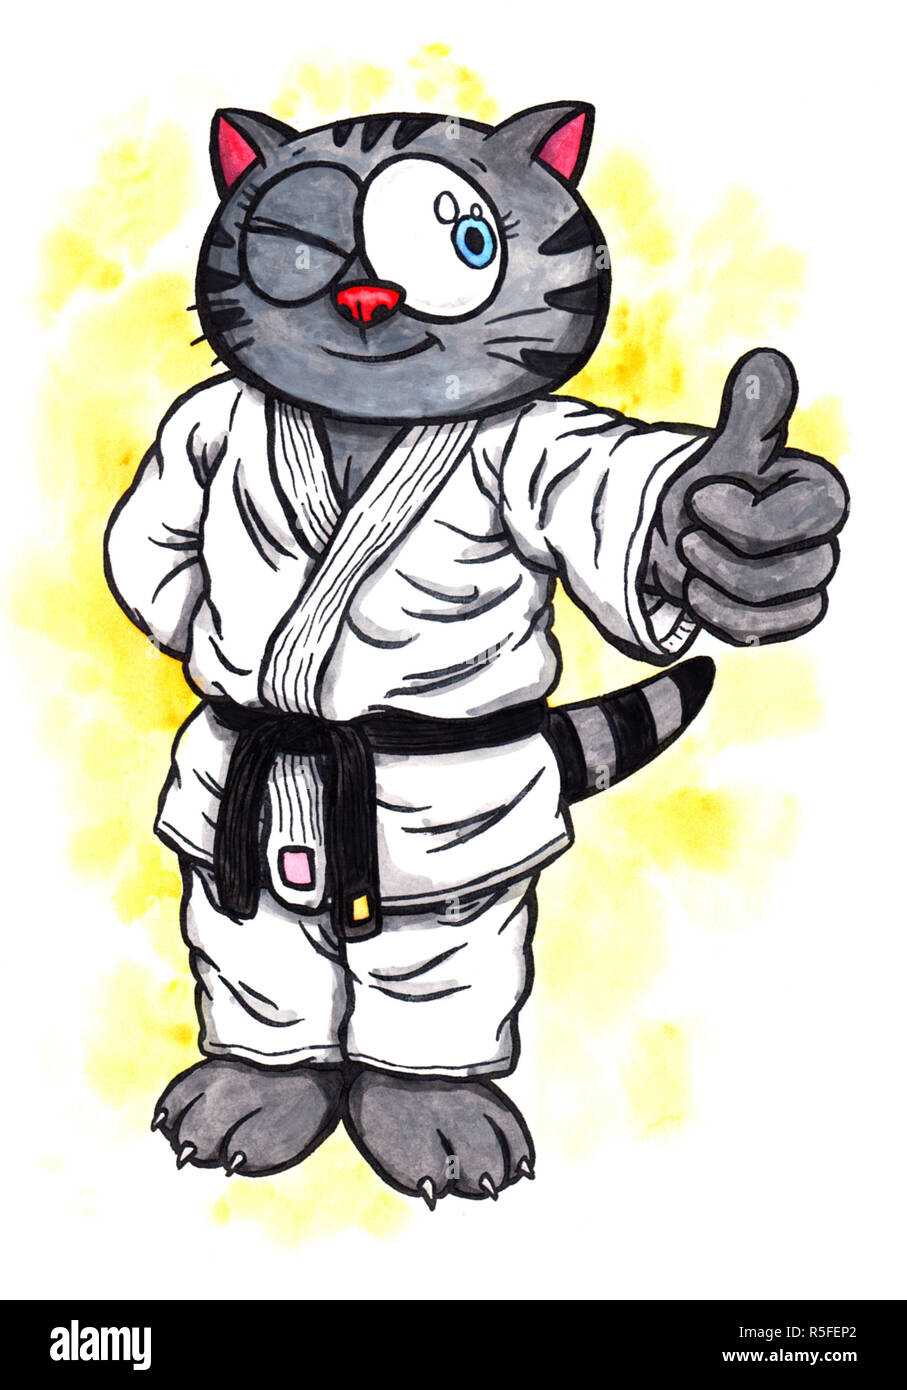 Un abstract acquerello colorato cartoon illustrazione di un manga come gattino con grandi occhi, indossa una tuta di karate con una cintura nera e piedi, sorridente e facendo come simbolo con il suo dito l'intera immagine è disegnata a mano con inchiostro colorato e wit Foto Stock